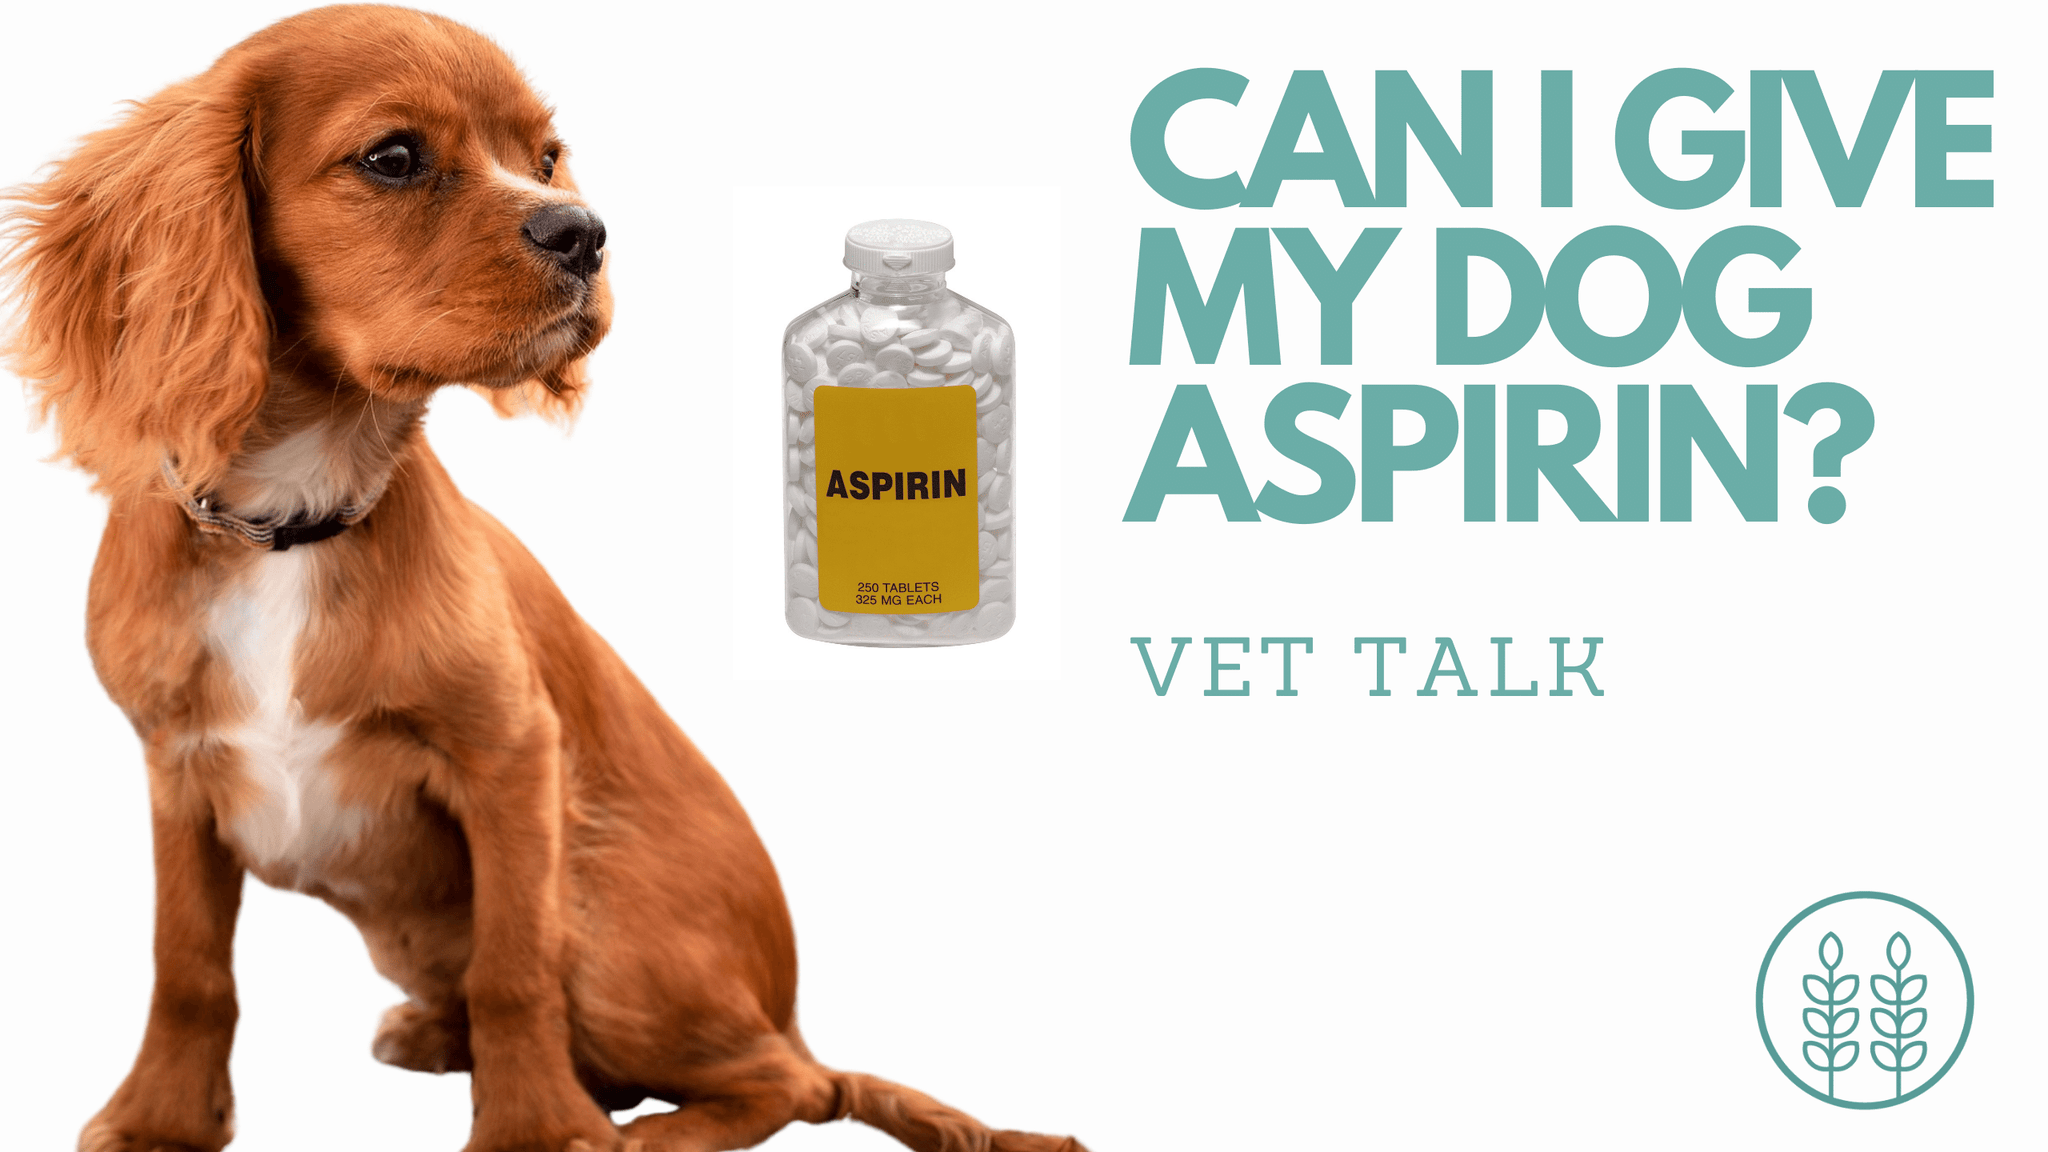 Q: Can I give my dog aspirin?